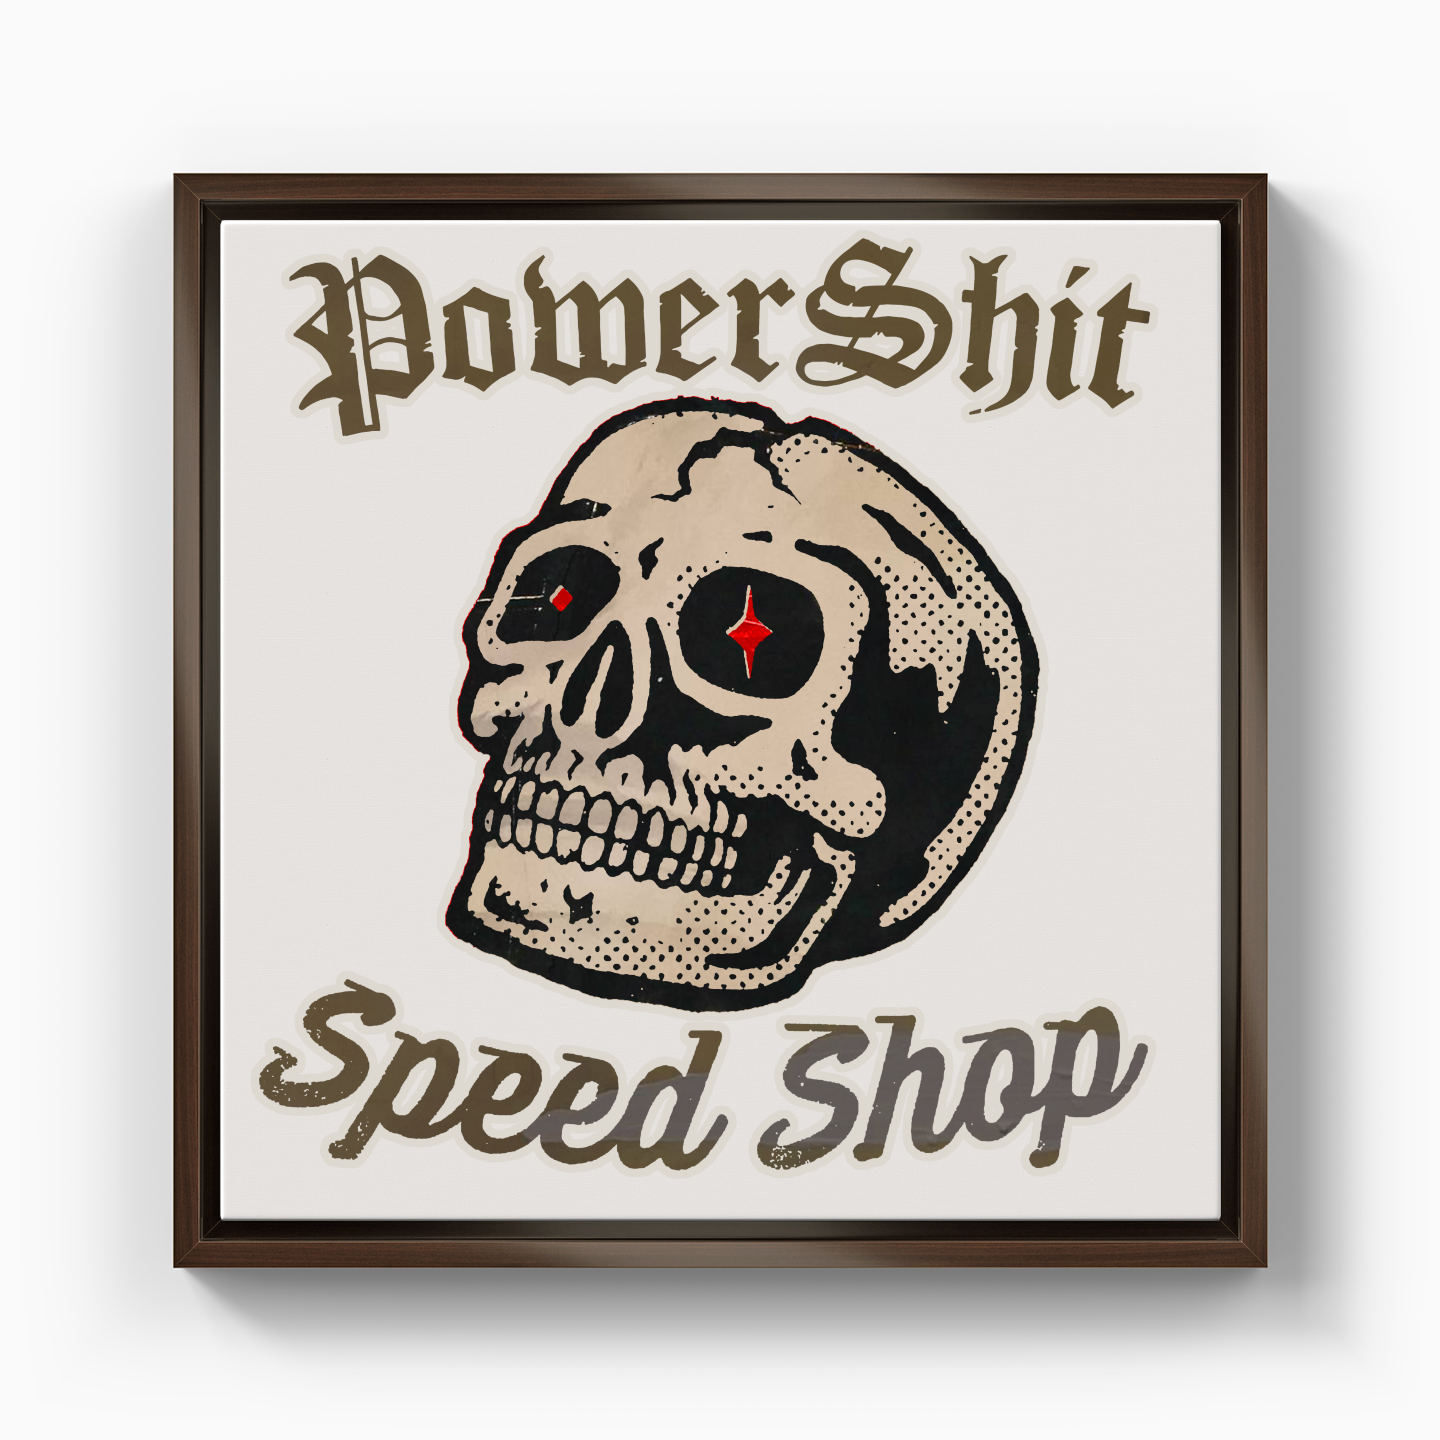 Power Shit Speed Shop - Kanvas Tablo